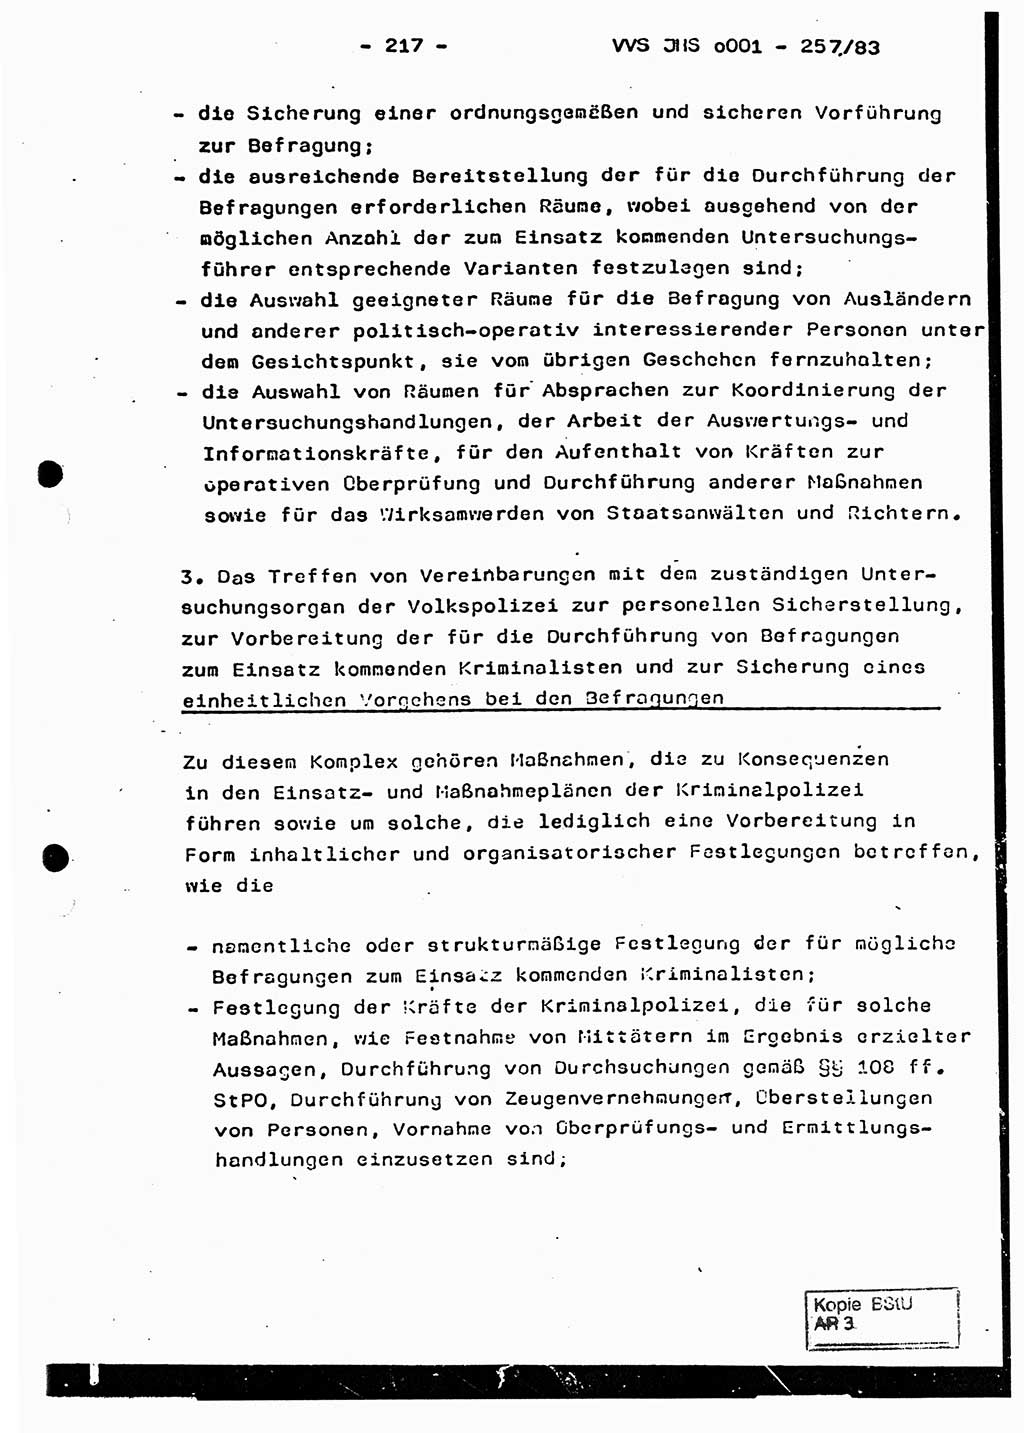 Dissertation, Oberst Helmut Lubas (BV Mdg.), Oberstleutnant Manfred Eschberger (HA IX), Oberleutnant Hans-Jürgen Ludwig (JHS), Ministerium für Staatssicherheit (MfS) [Deutsche Demokratische Republik (DDR)], Juristische Hochschule (JHS), Vertrauliche Verschlußsache (VVS) o001-257/83, Potsdam 1983, Seite 217 (Diss. MfS DDR JHS VVS o001-257/83 1983, S. 217)